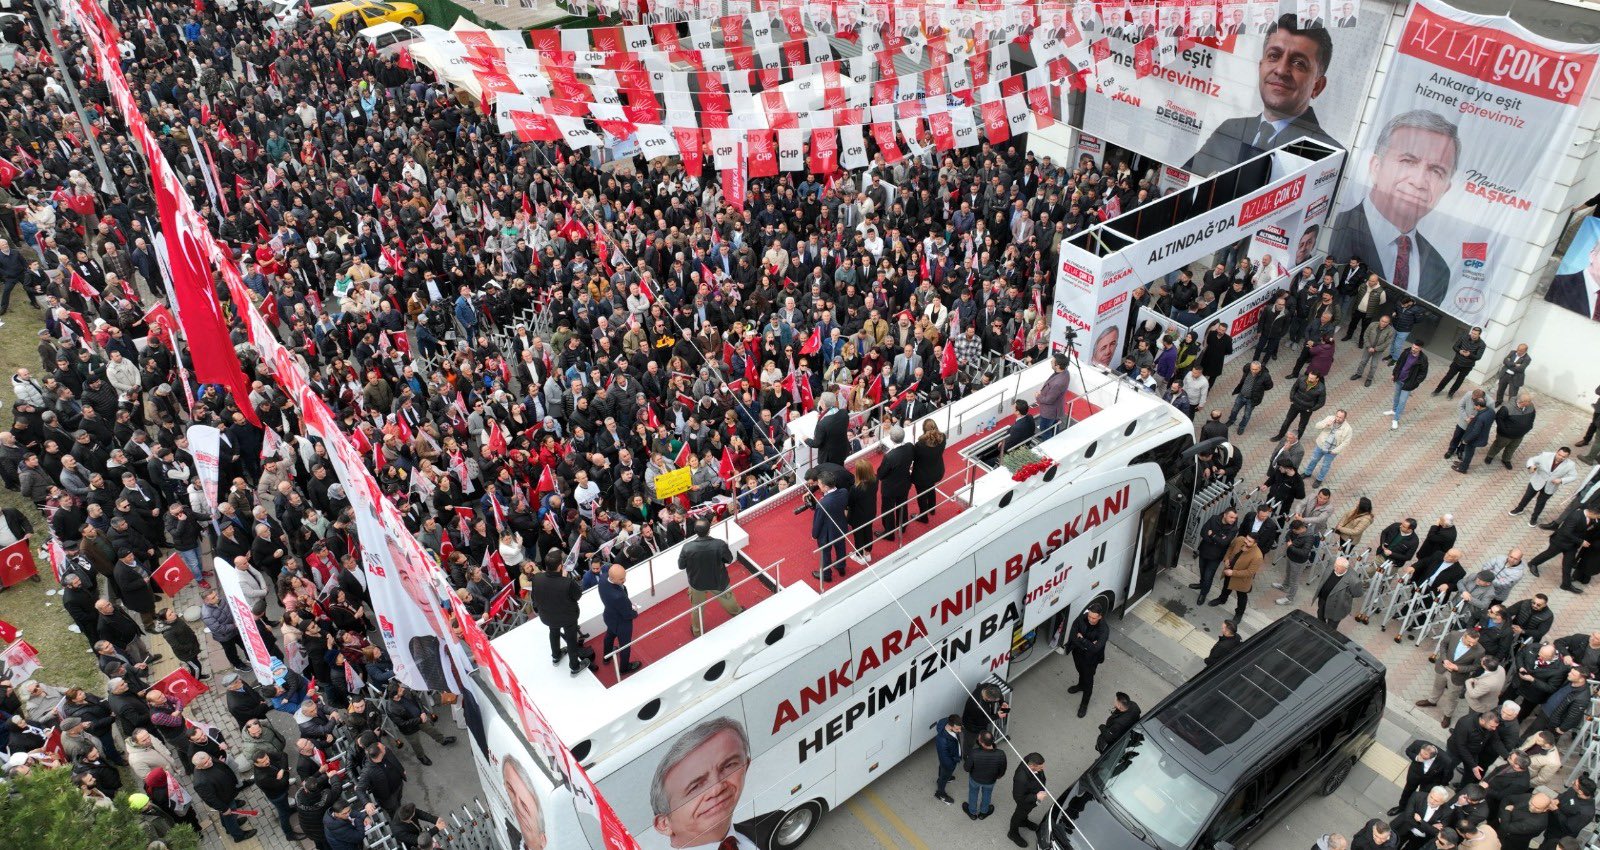 Başkan Yavaş: ”Ankara Büyükşehir Belediyesi ihtiyacı olan herkese hızır gibi yetişir”